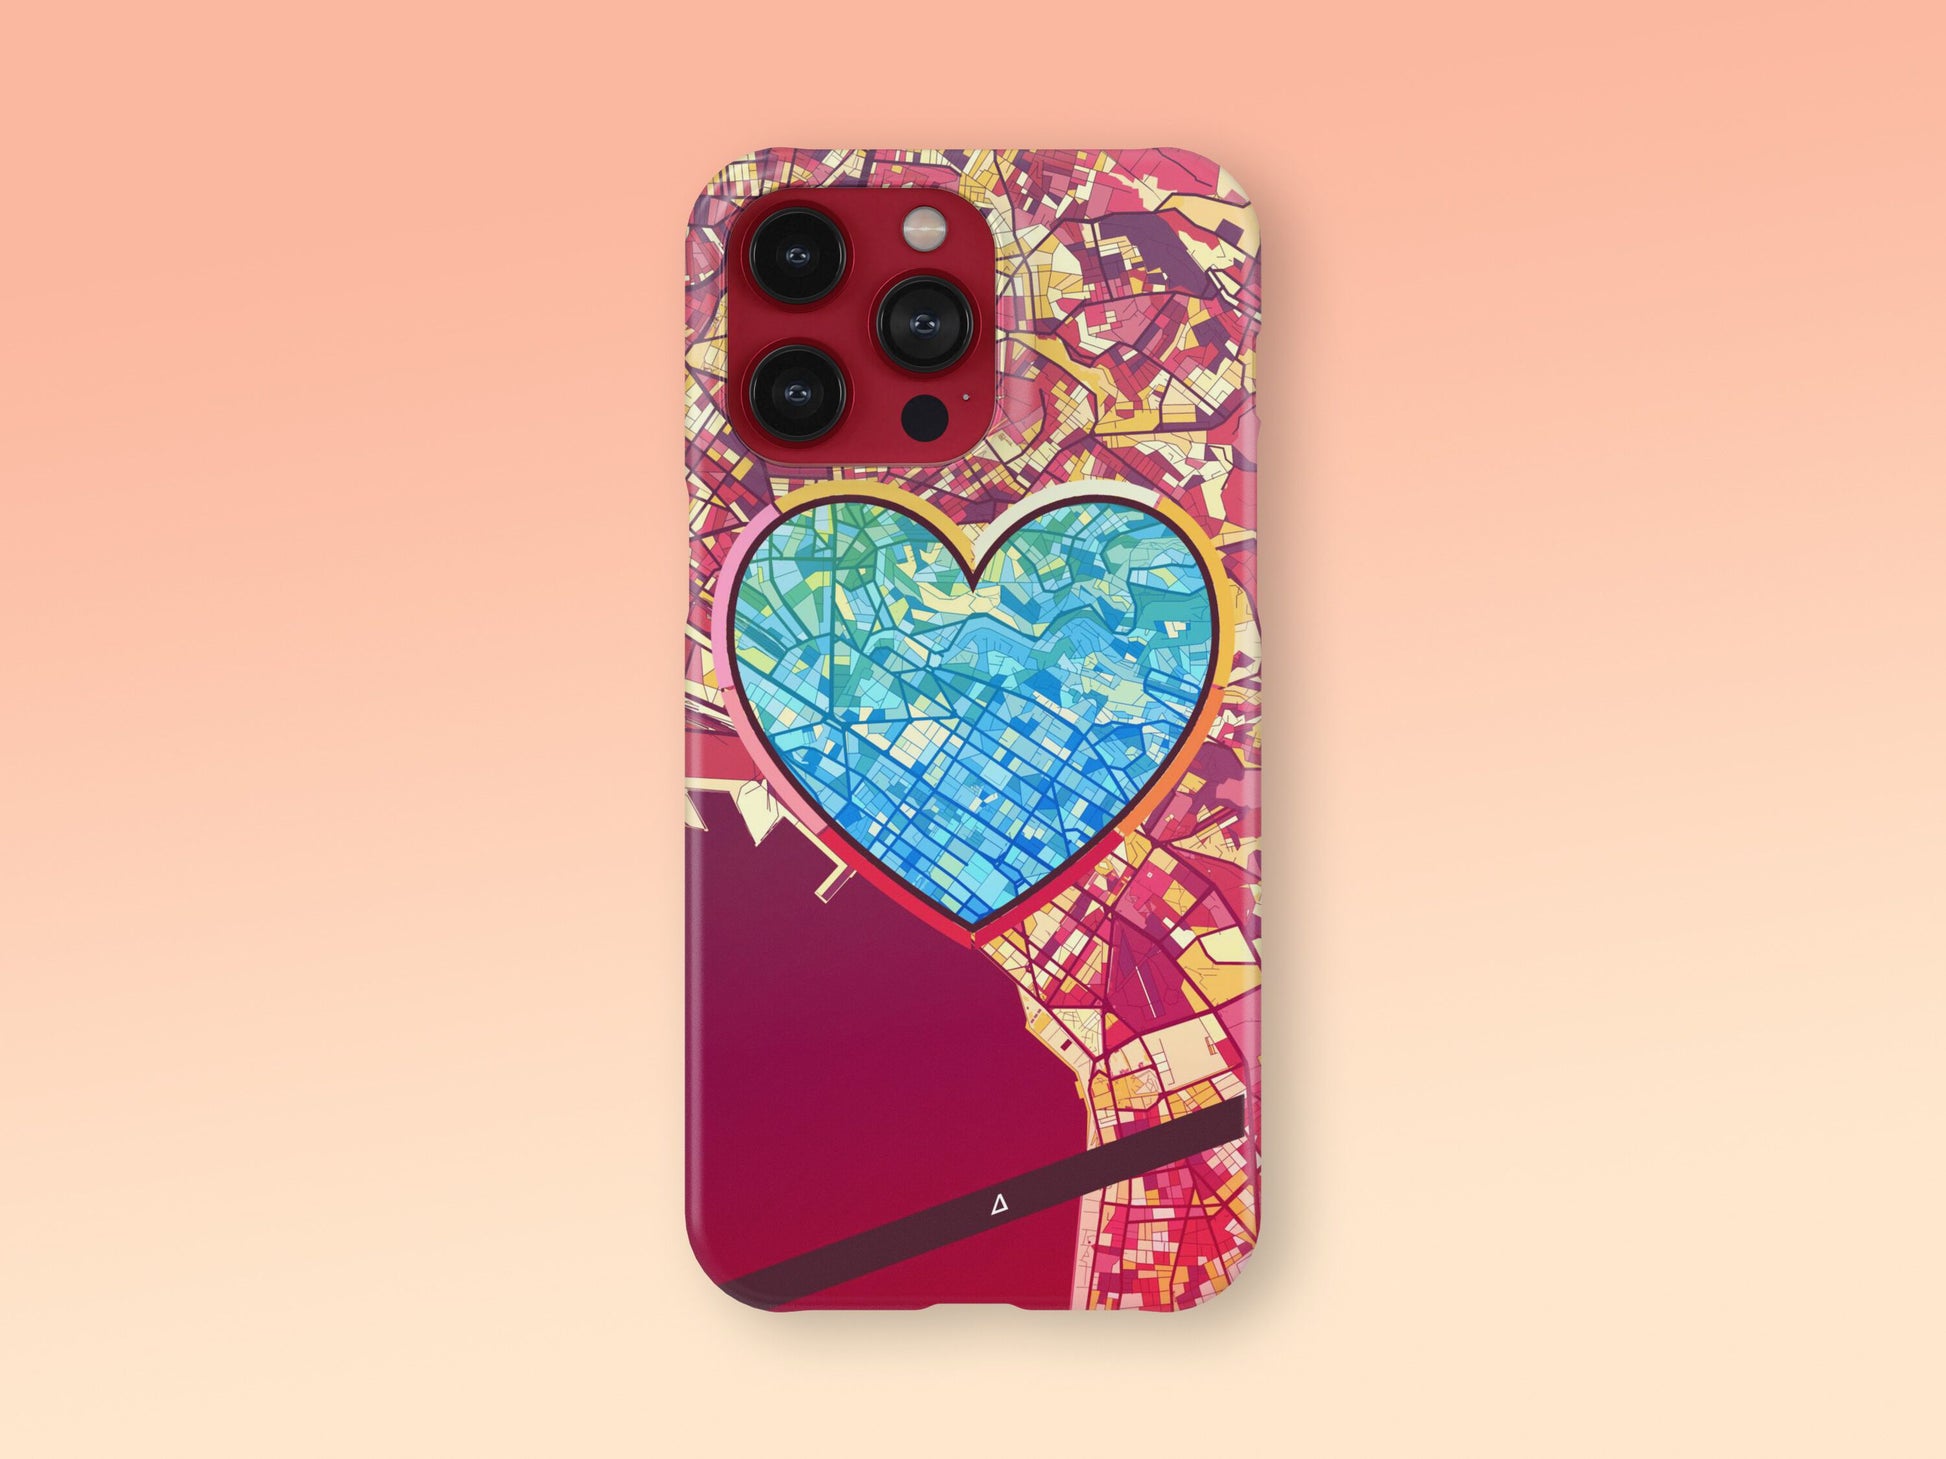 Θεσσαλονικη Ελλαδα slim phone case with colorful icon. Birthday, wedding or housewarming gift. Couple match cases. 2